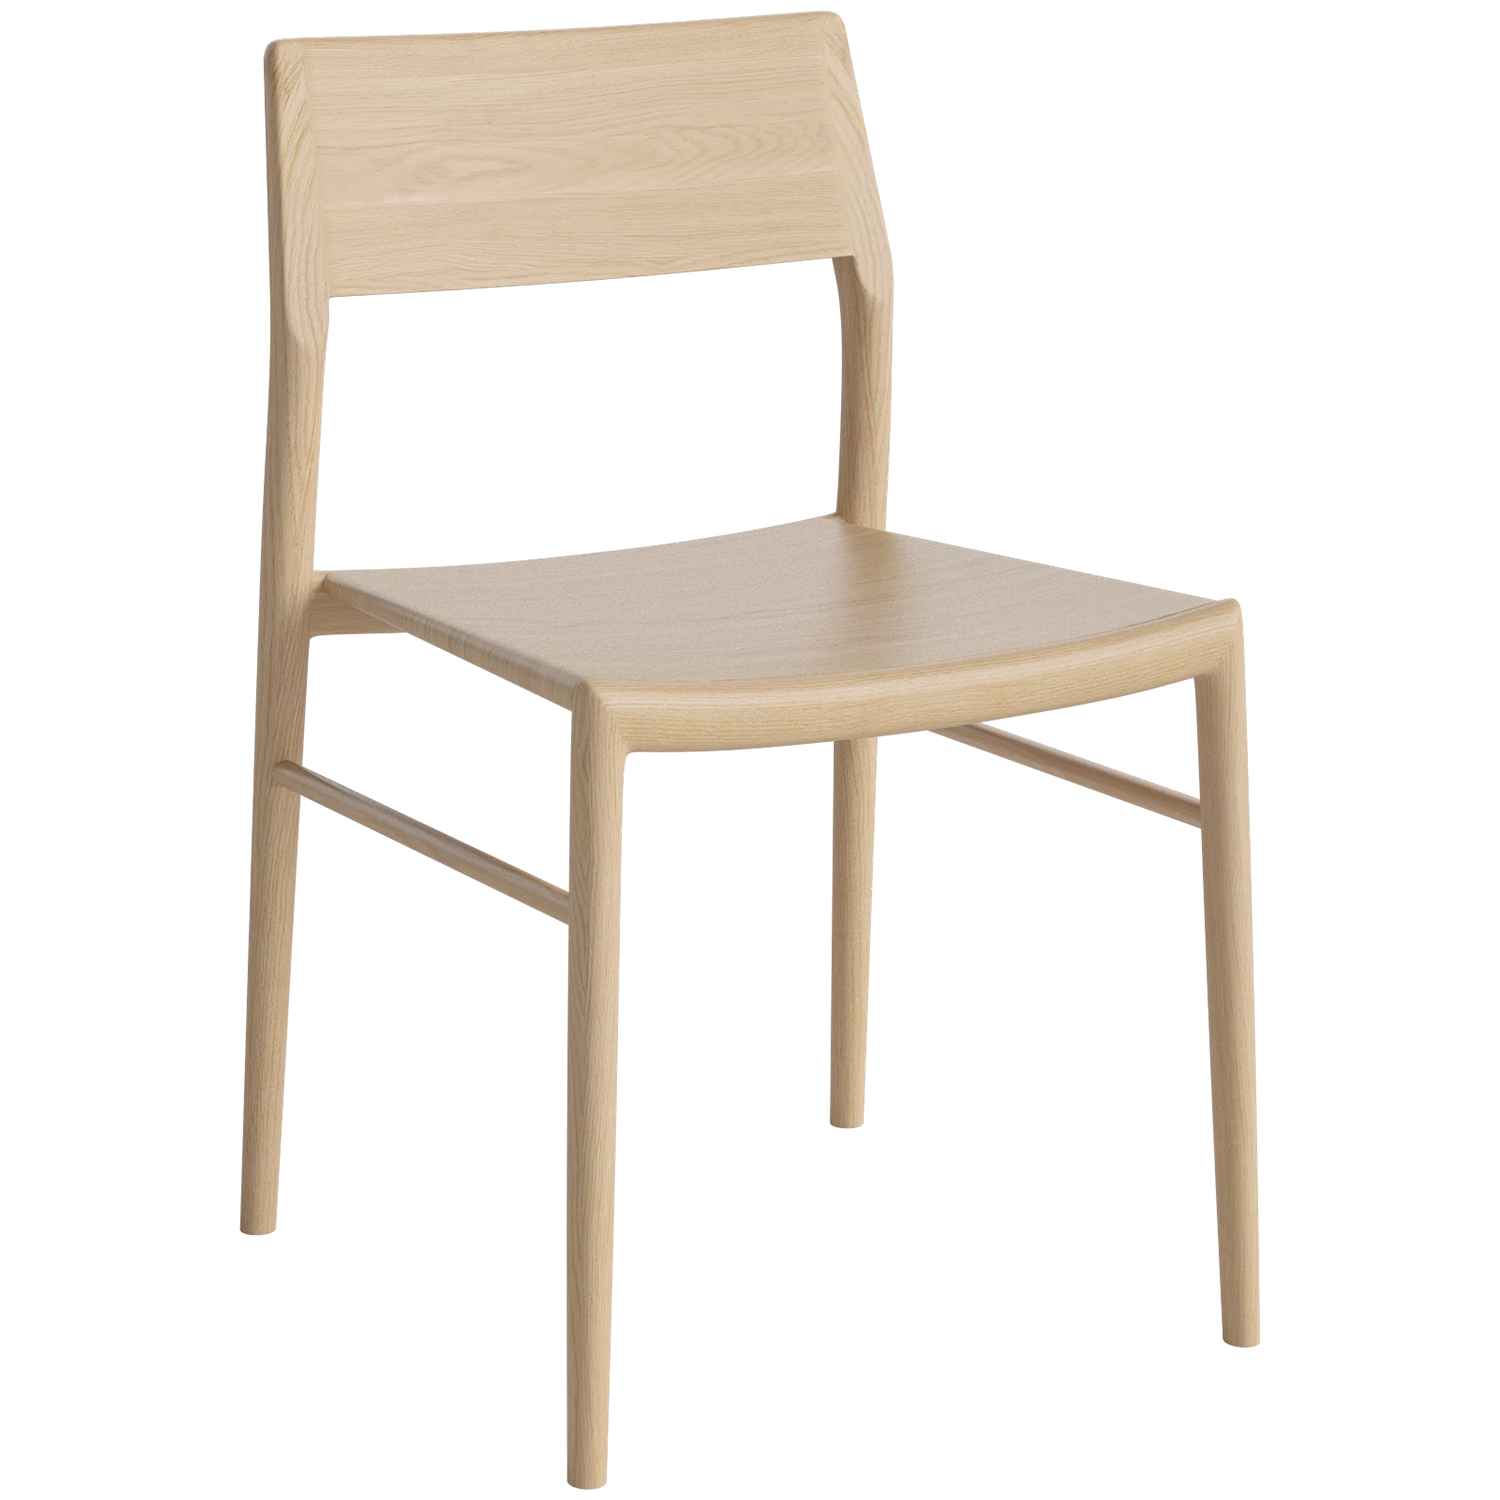 Bolia designové židle Chicago Dining Chair